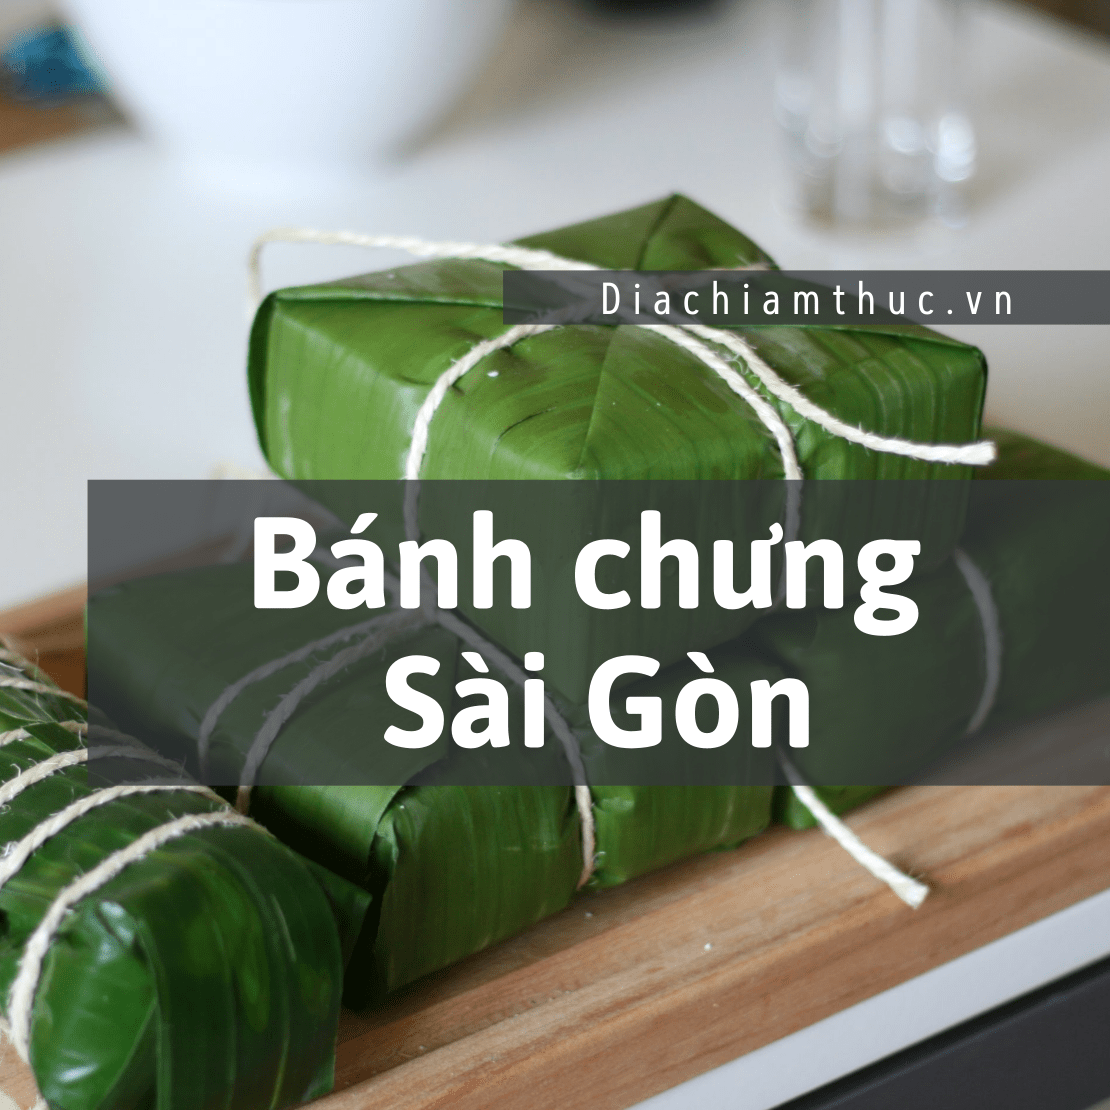 Bánh chưng Sài Gòn